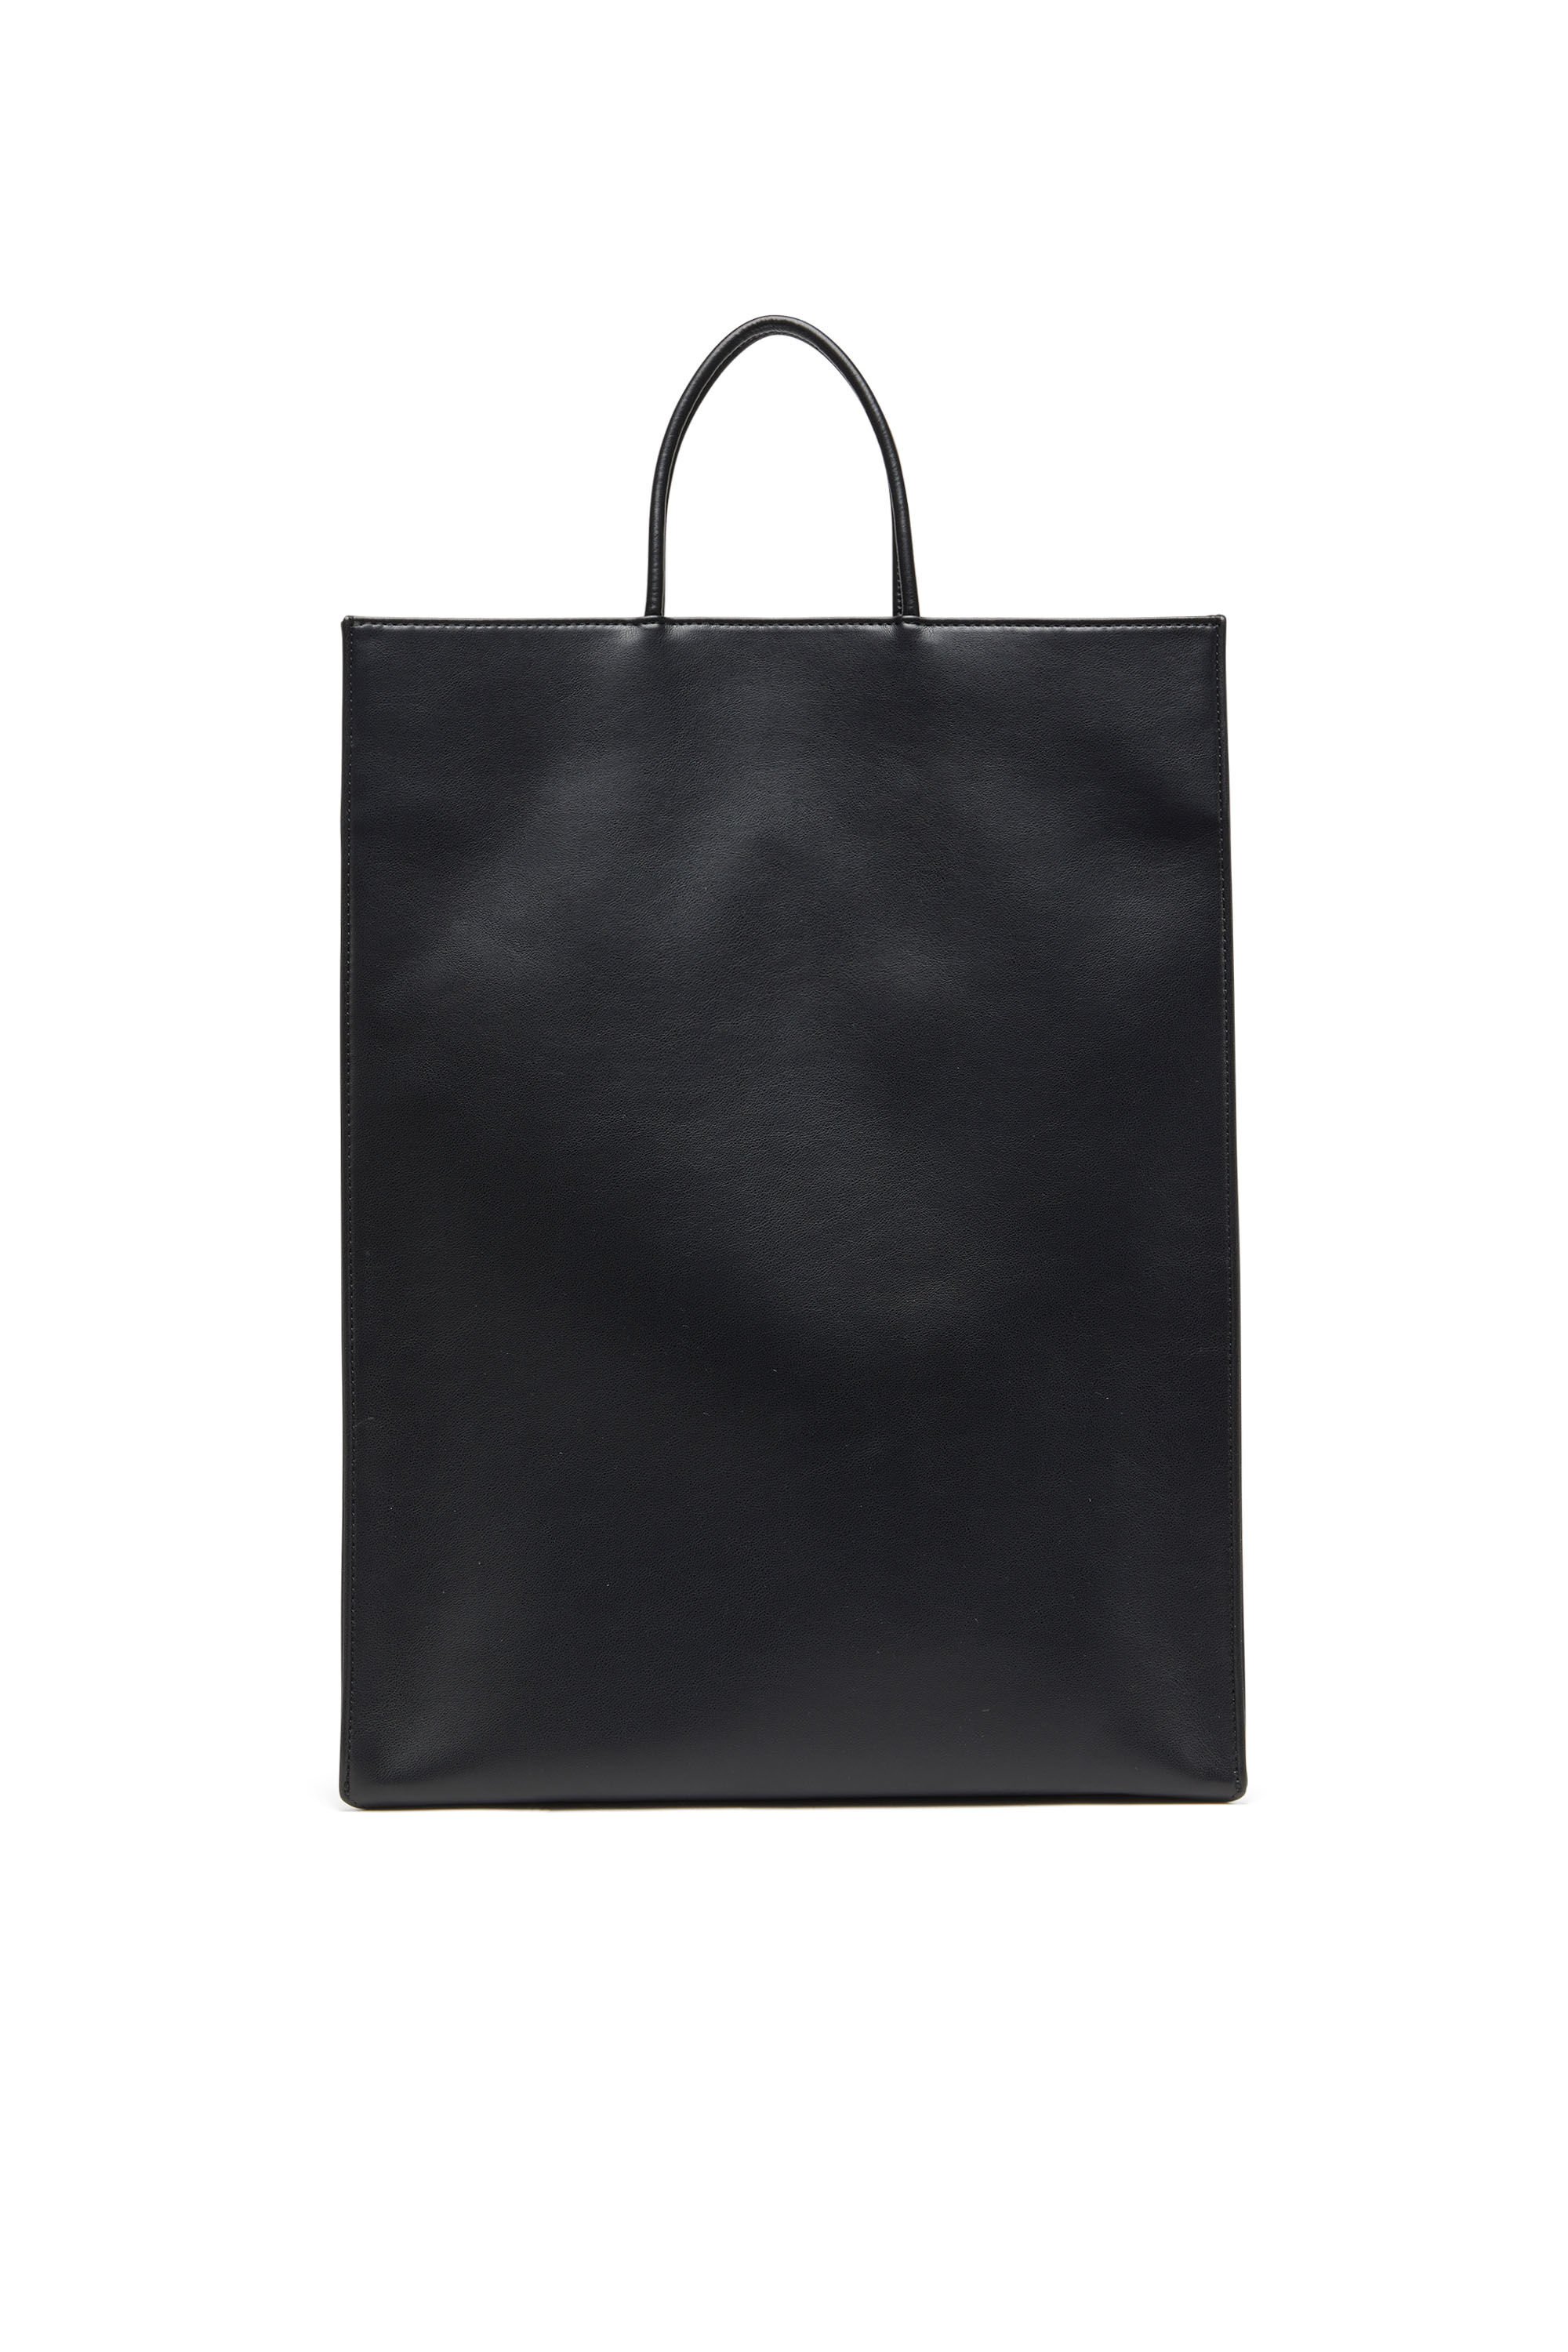 Diesel - DSL 3D SHOPPER L X, Unisex Dsl 3D L-Large PU tote bag with embossed logo in Black - Image 3